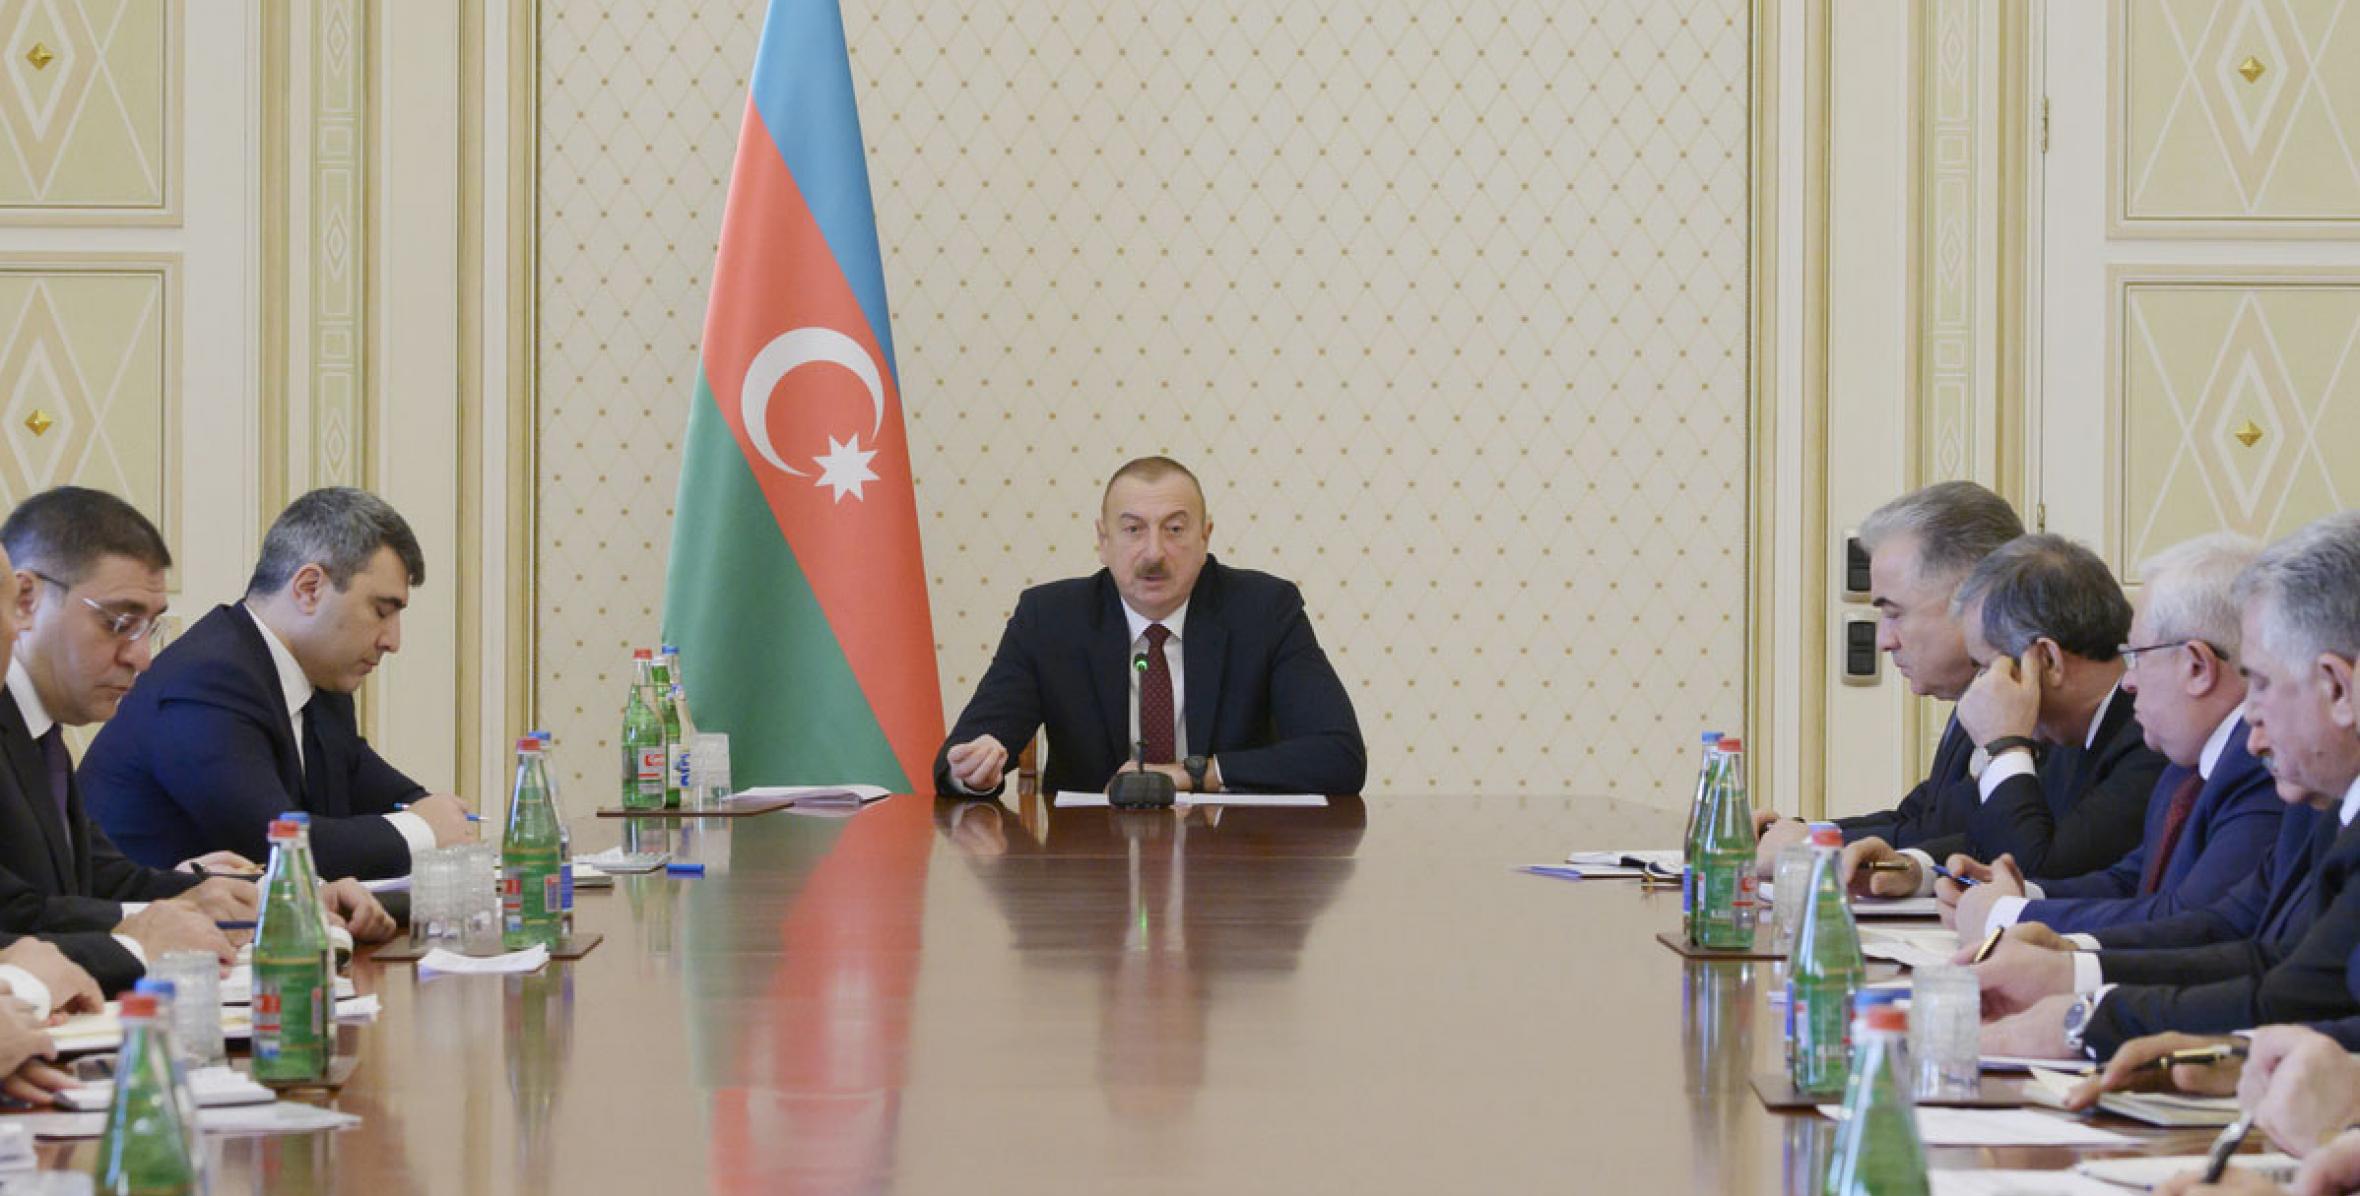 Вступительная речь Ильхама Алиева на совещание посвященное итогам хлопкового сезона и предстоящим в 2020 году мерам